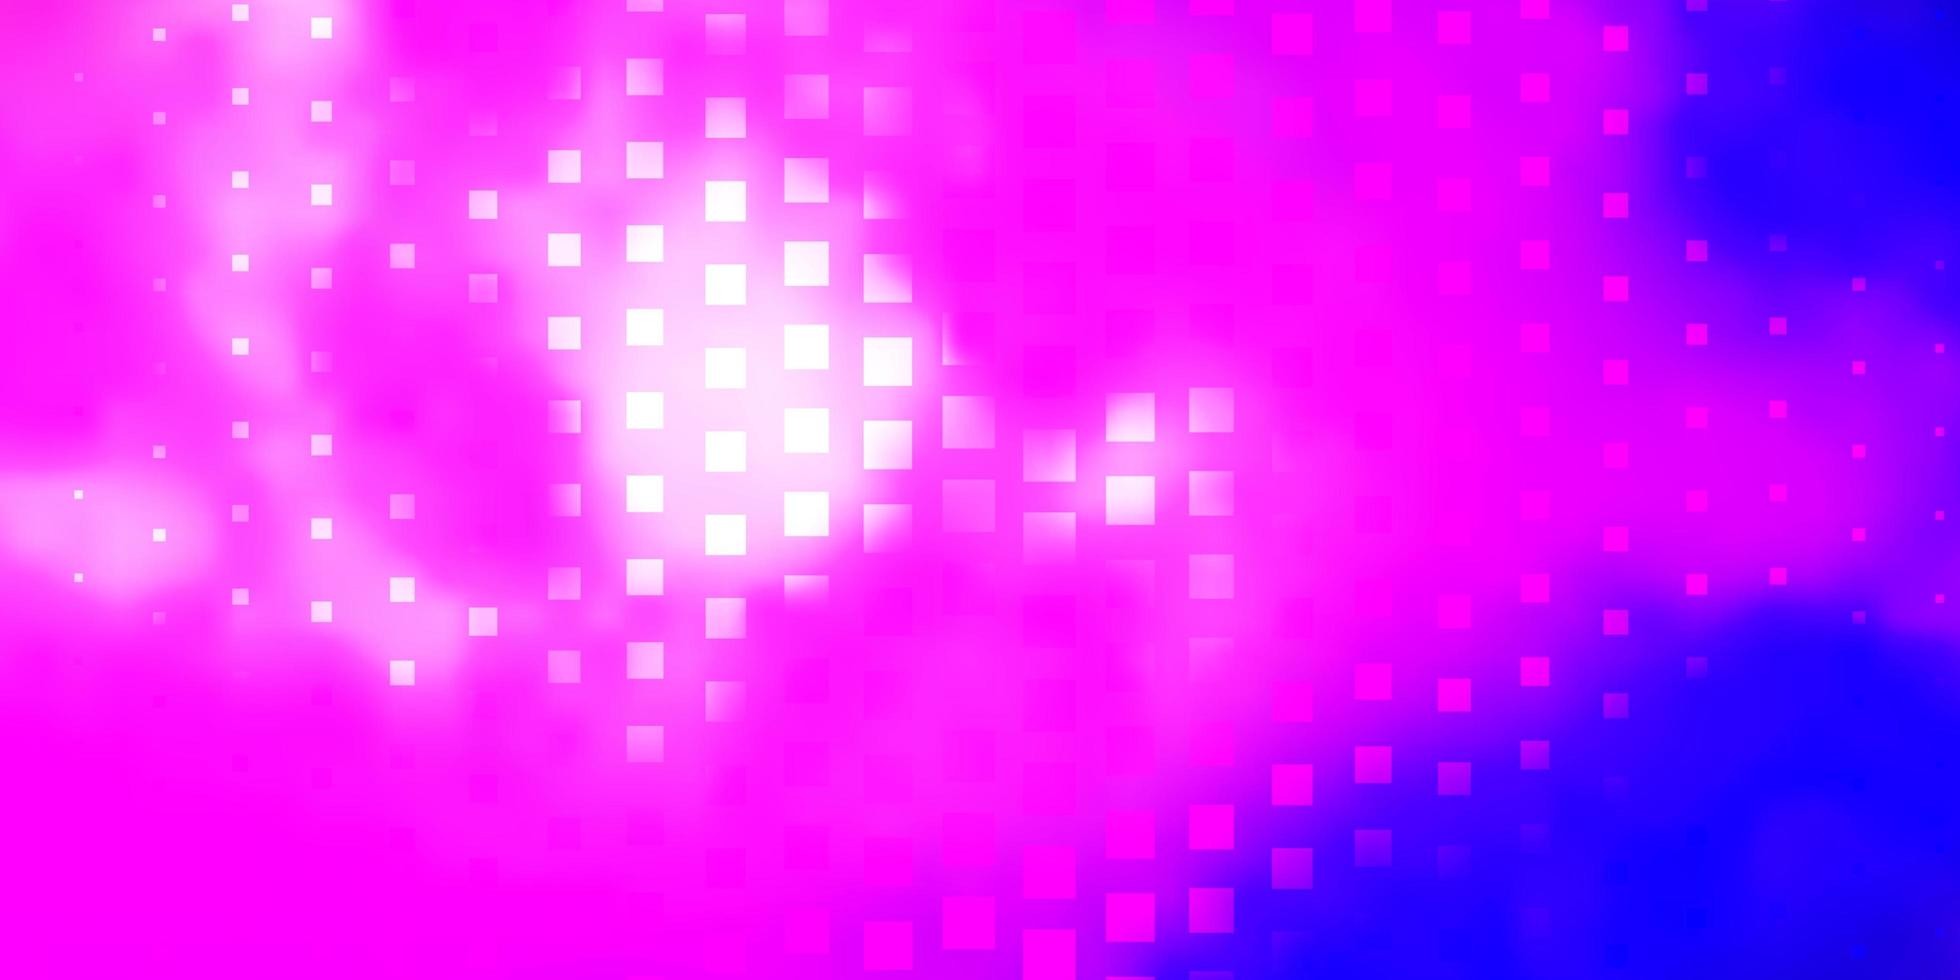 Fondo de vector violeta, rosa claro en estilo poligonal. Ilustración colorida con rectángulos y cuadrados degradados. patrón para folletos comerciales, folletos